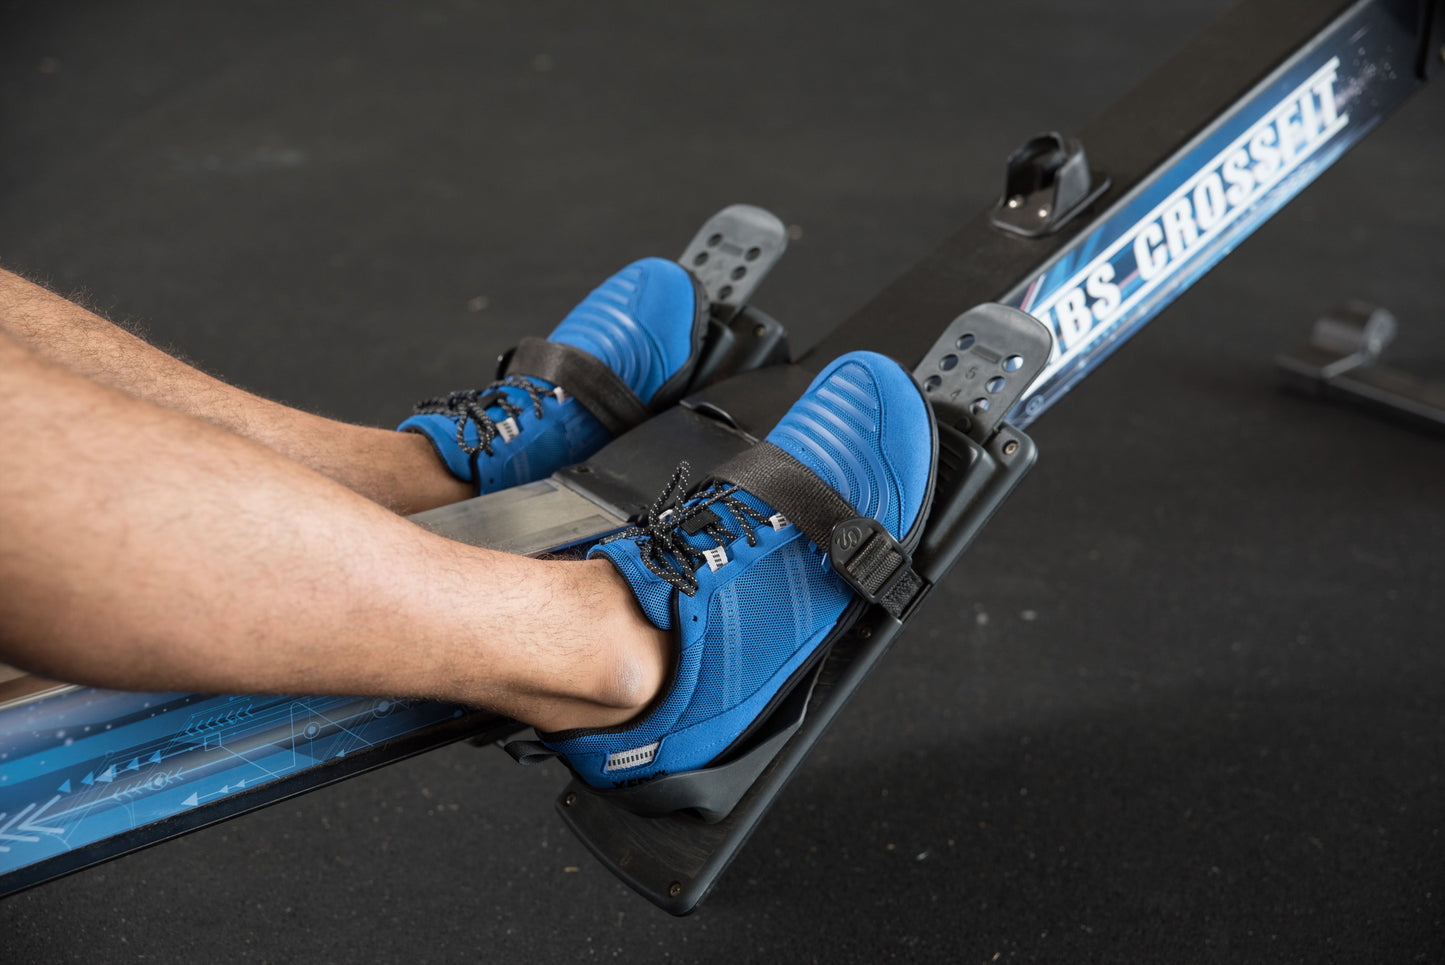 Xero Shoes 360° Mens barfods træningssko til mænd i farven blue gray, lifestyle